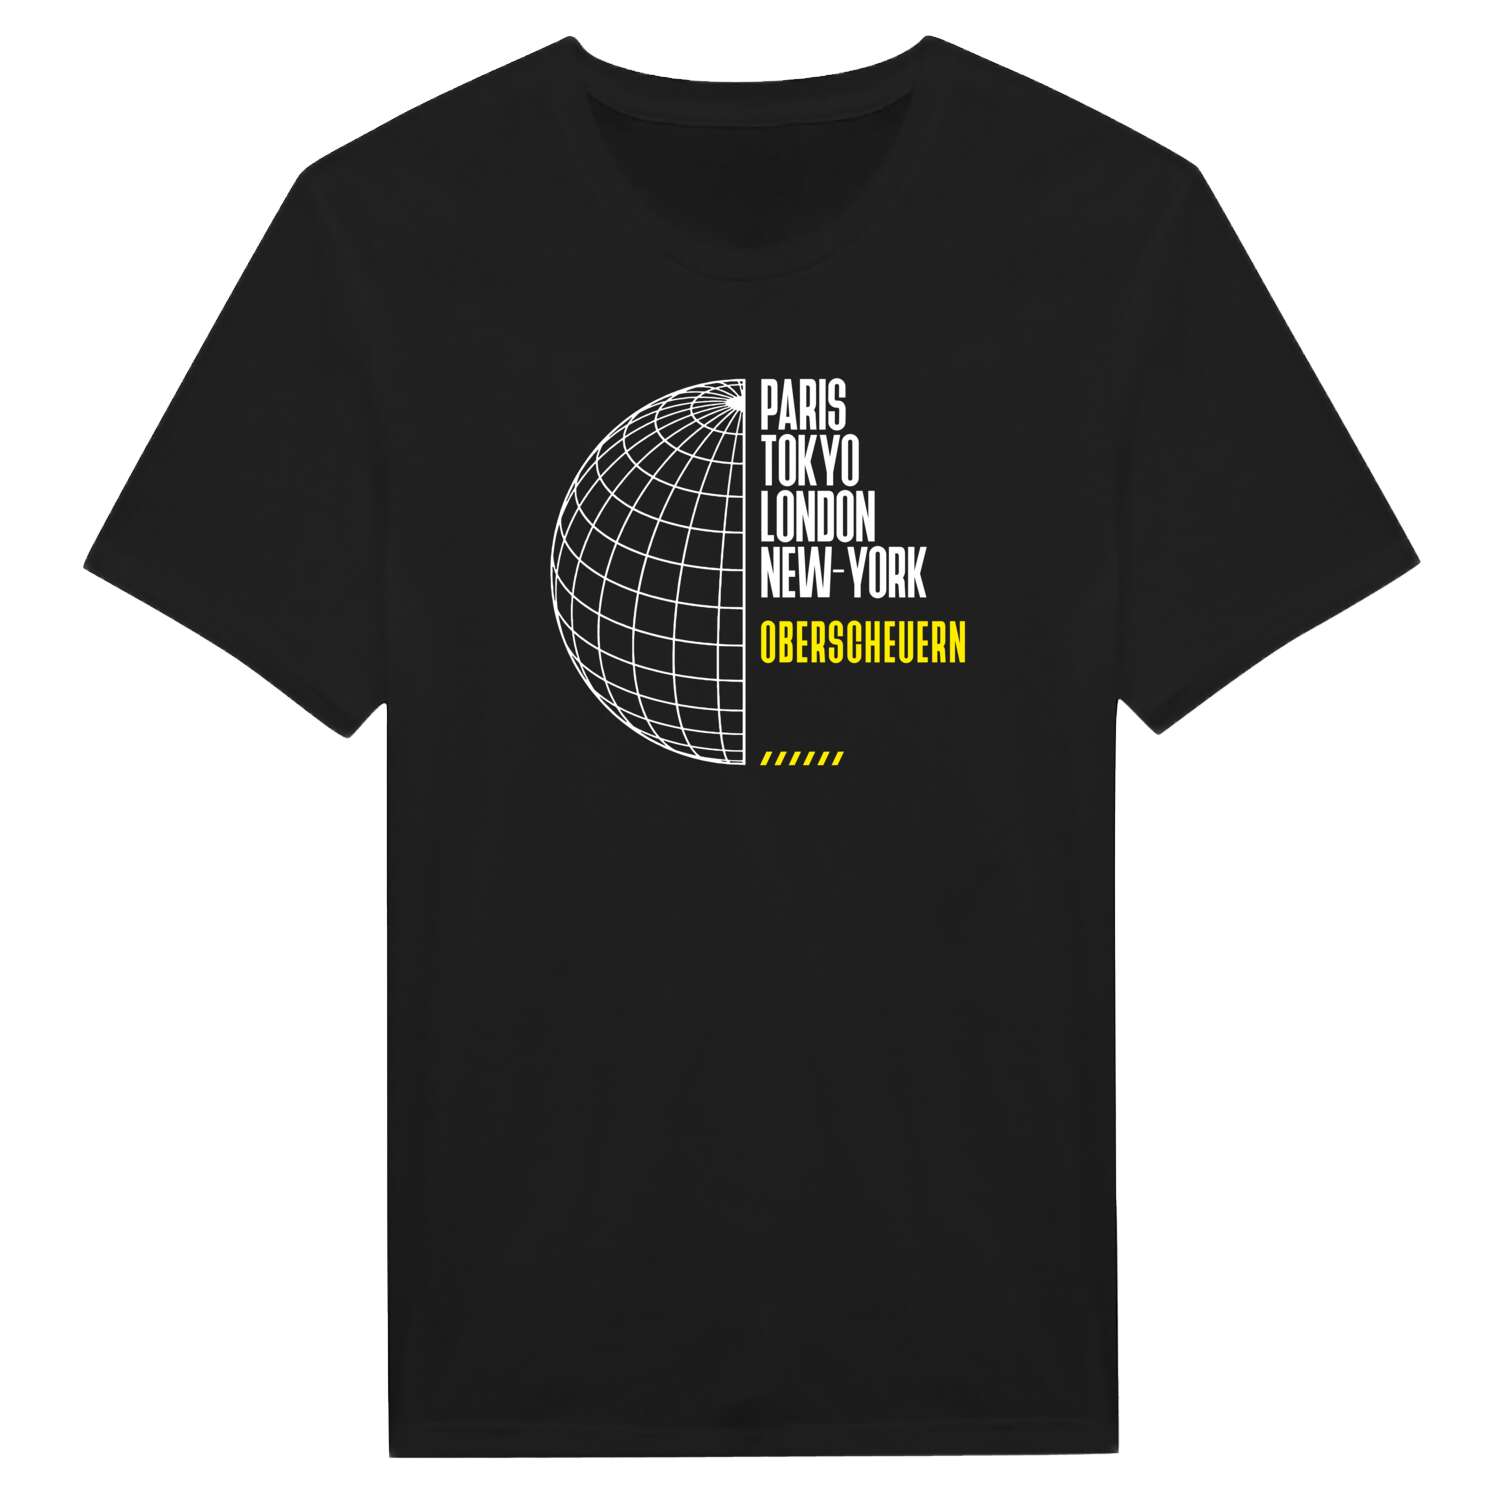 Oberscheuern T-Shirt »Paris Tokyo London«